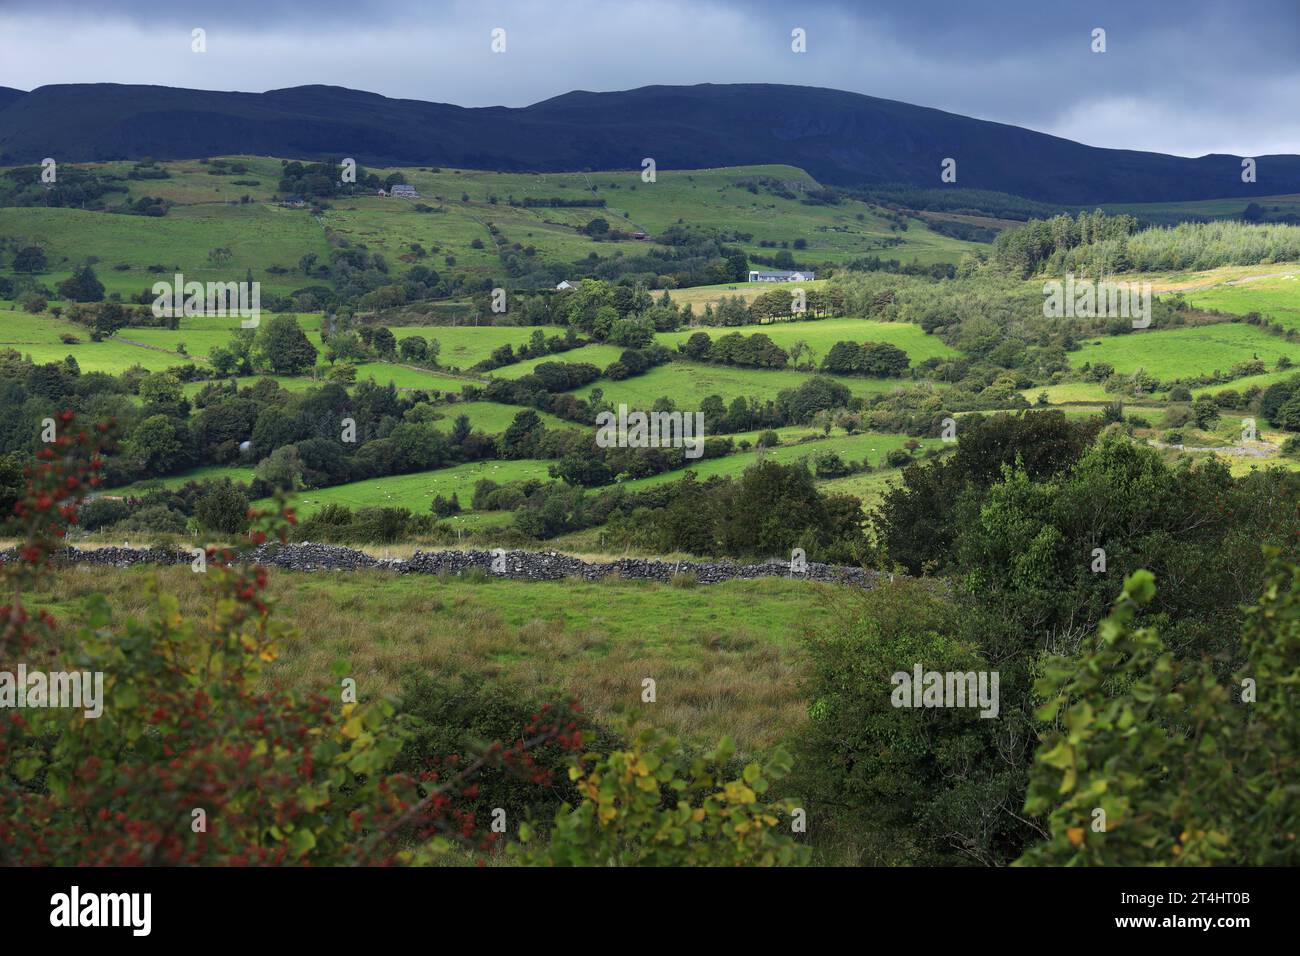 Die sanfte Hügellandschaft des County Sligo, Irland, bietet grüne Felder mit Ackerwiesen, die von Bäumen, Hecken und Trockenmauern umgeben sind Stockfoto